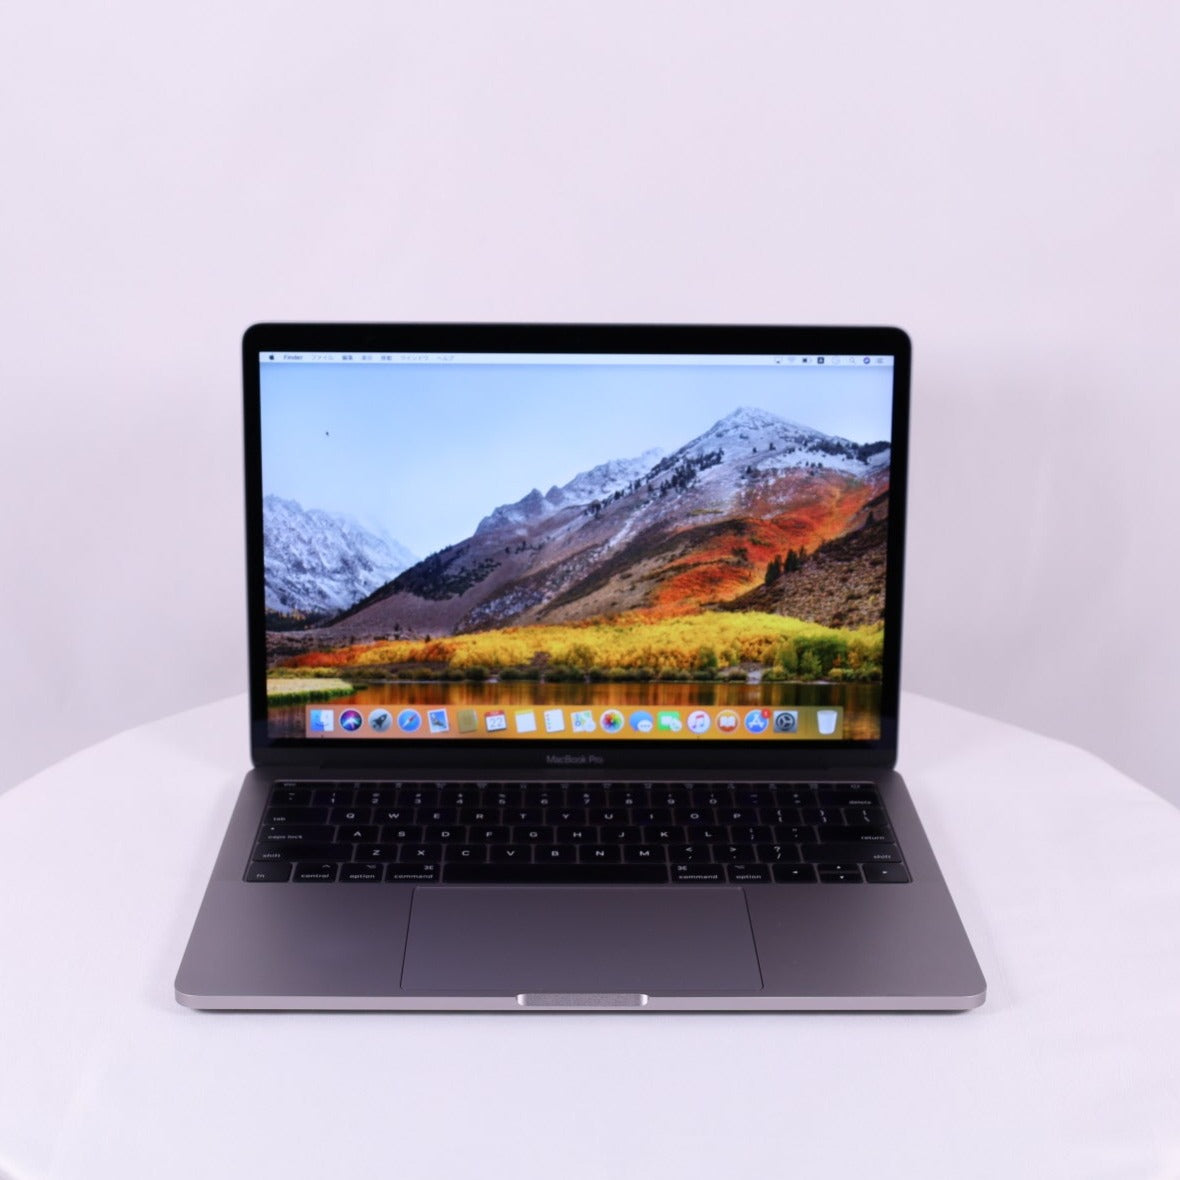 【Cランク】【中古】MacBook Pro (13-inch, 2017, Two Thunderbolt 3 ports) スペースグレイ  USキーボード